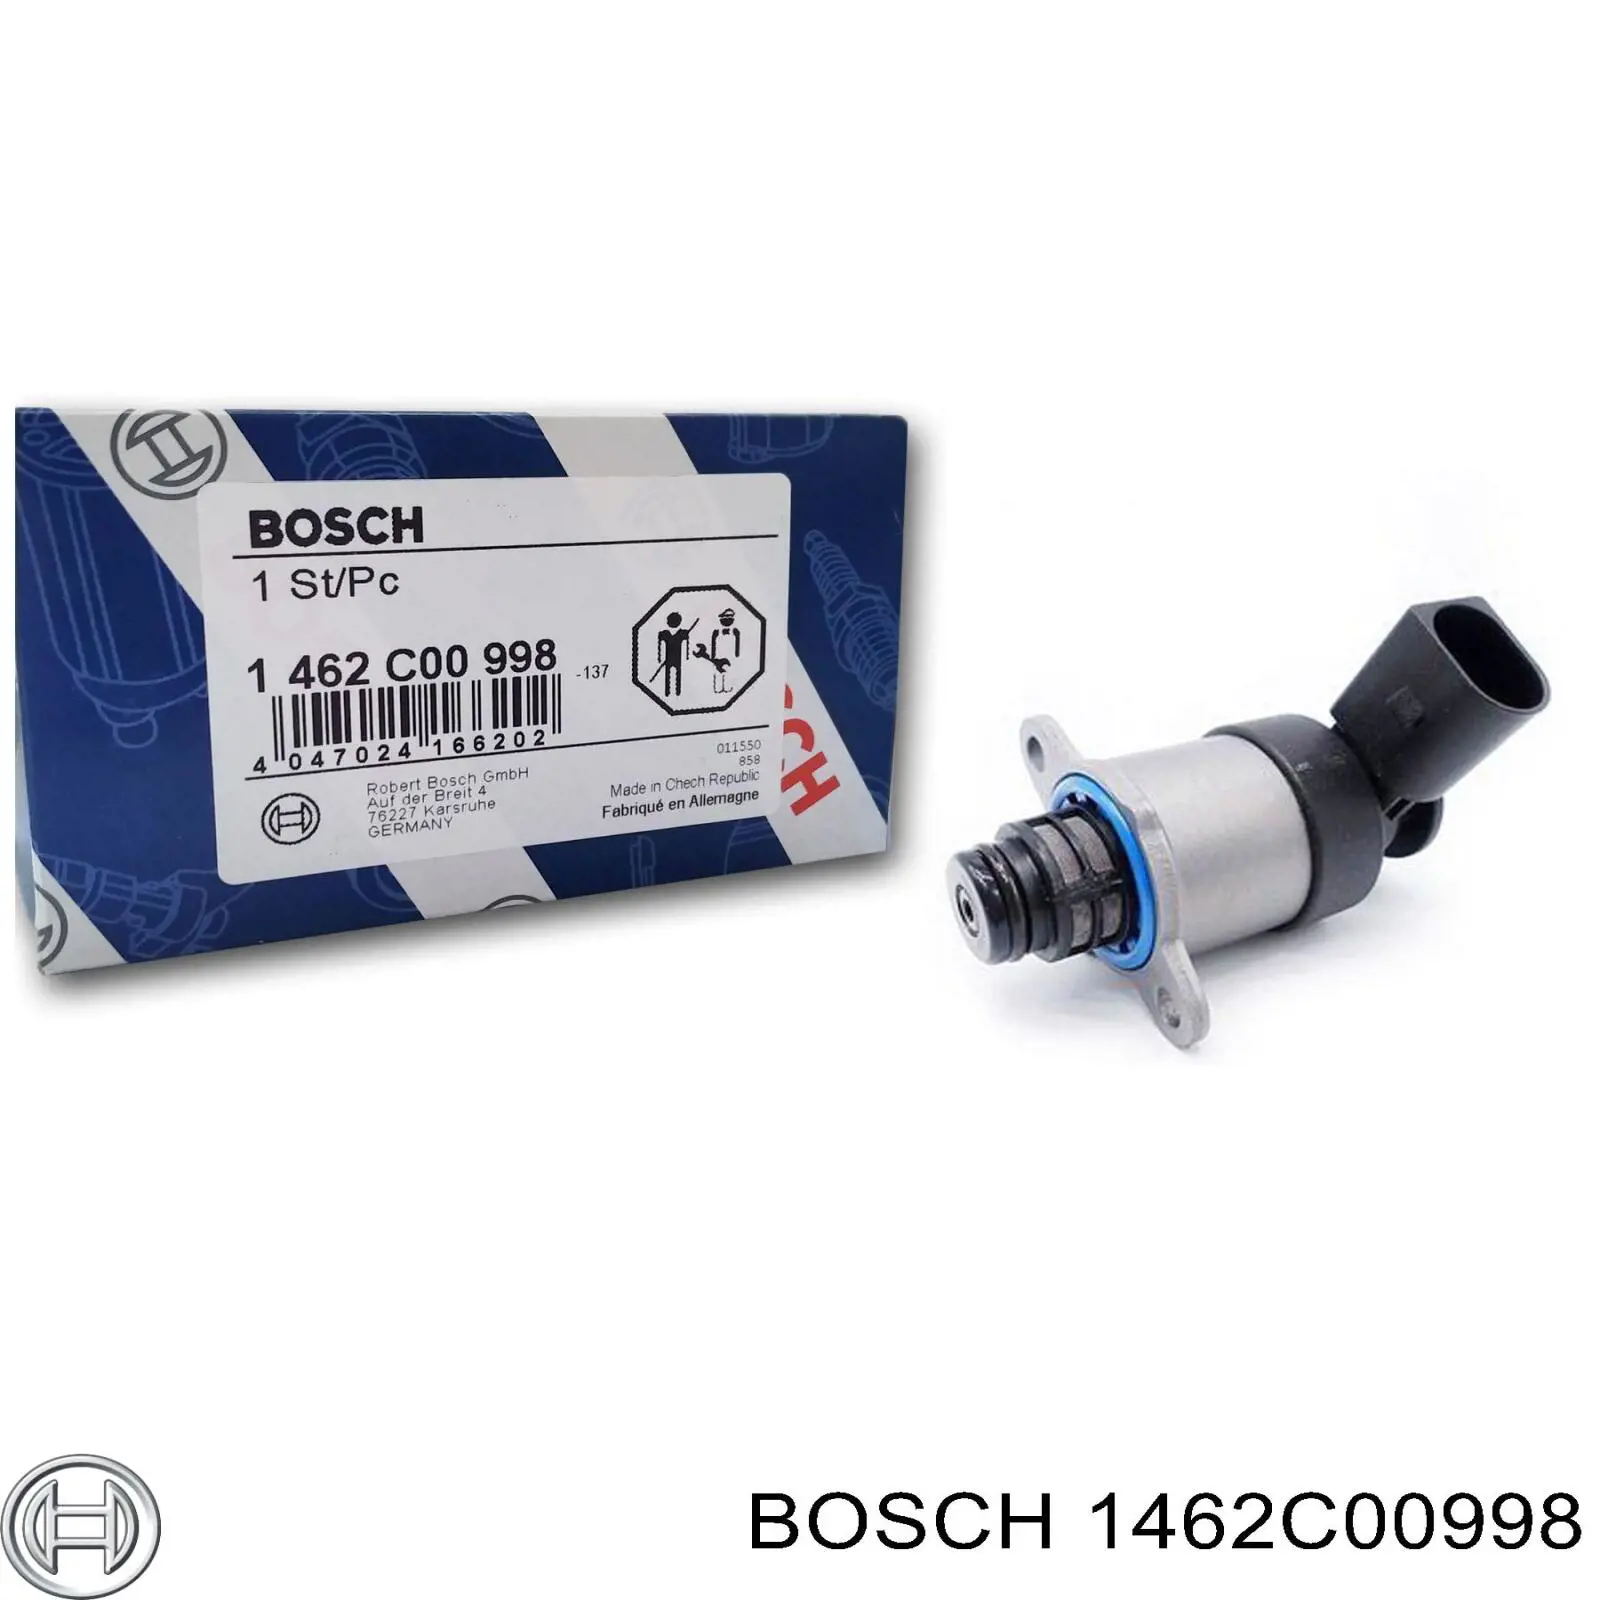 1462C00998 Bosch клапан регулировки давления (редукционный клапан тнвд Common-Rail-System)